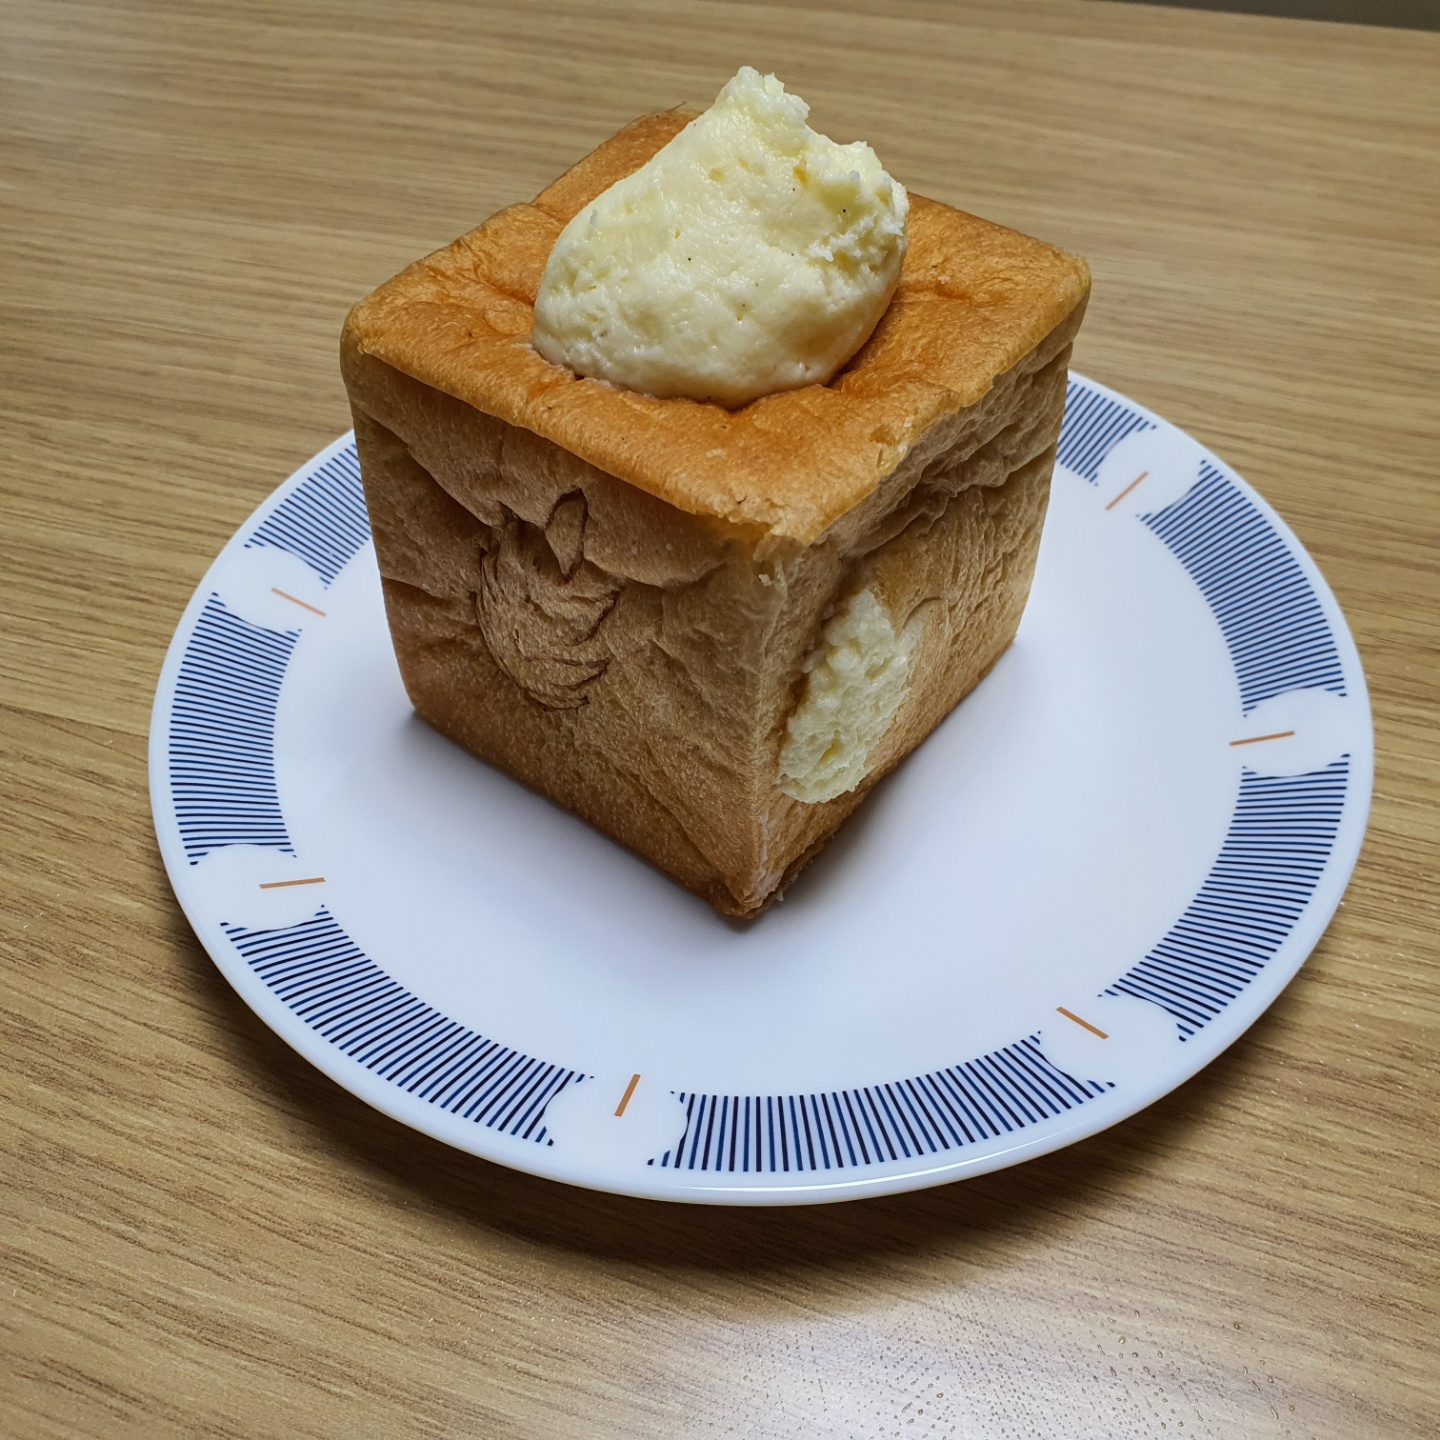 르뺑블랑 식빵 사진